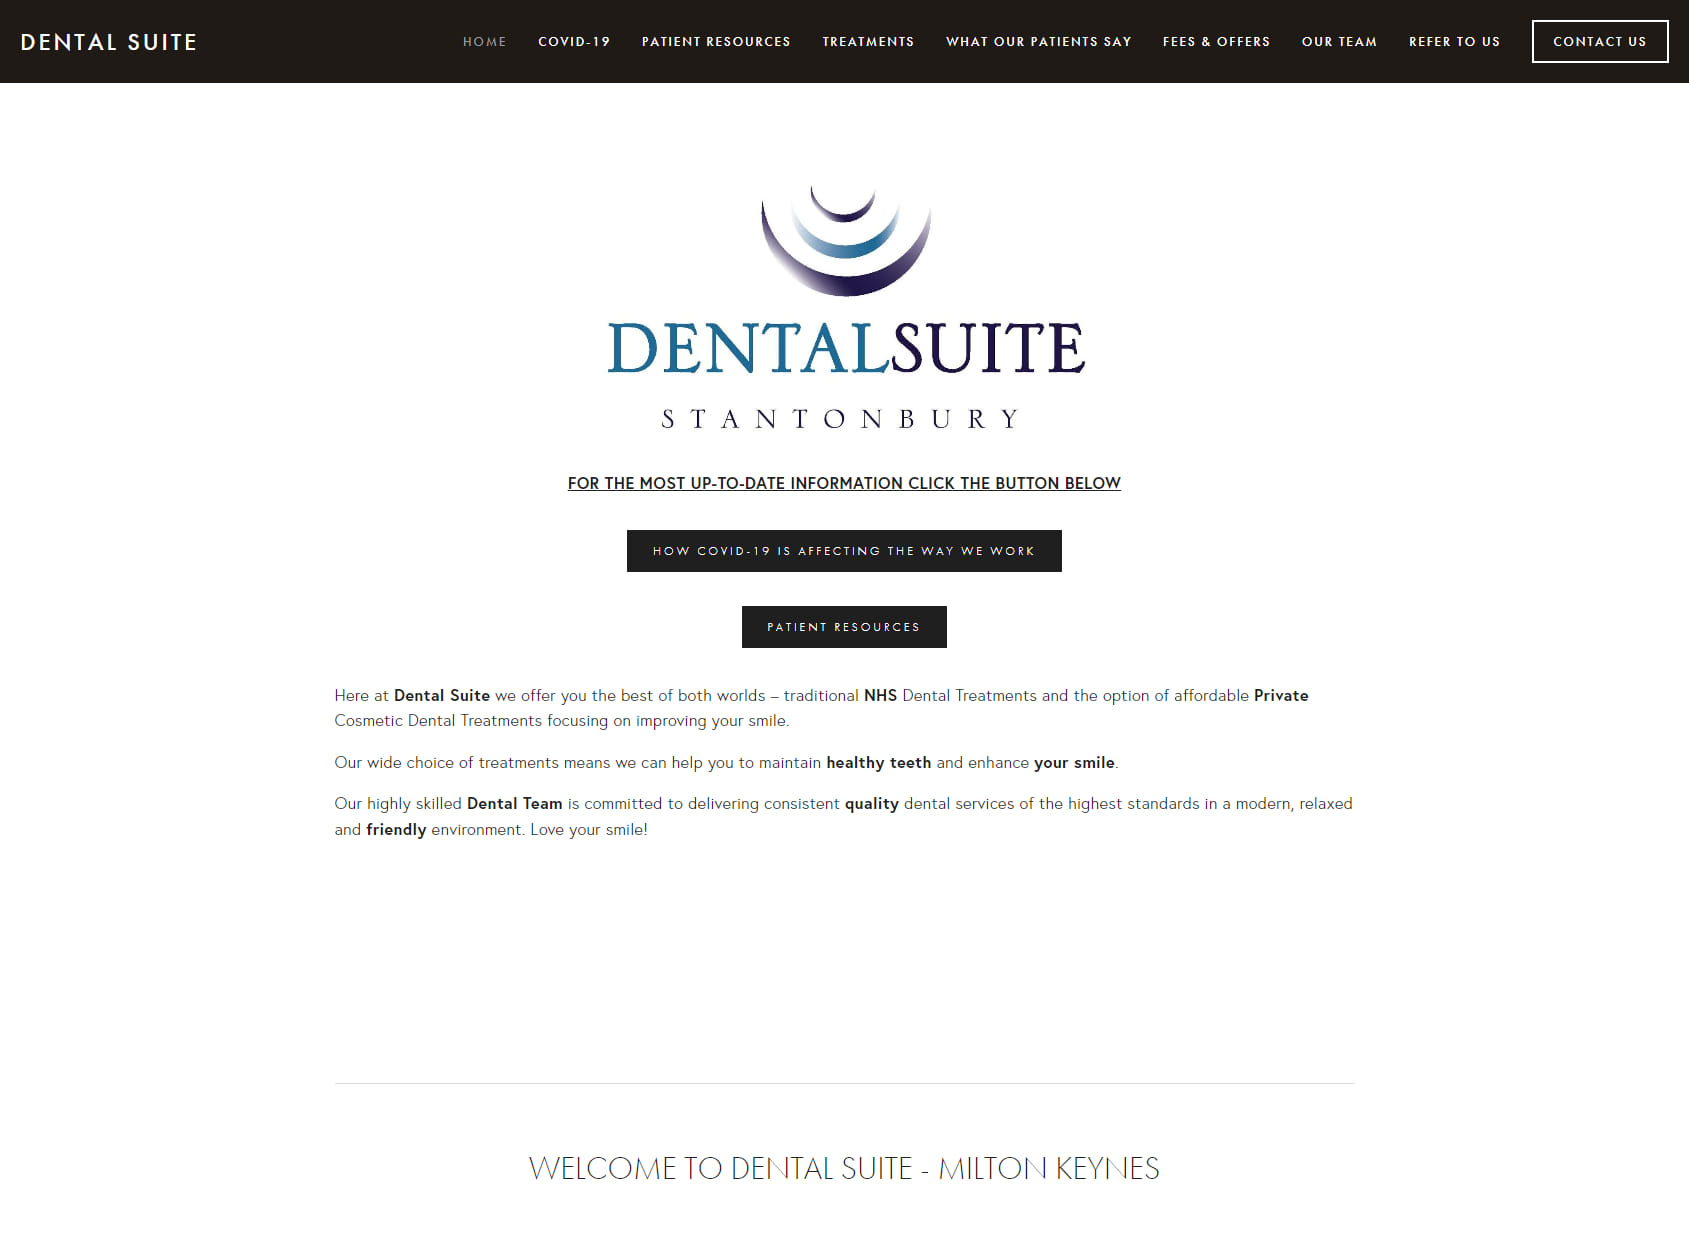 Dental Suite Ltd